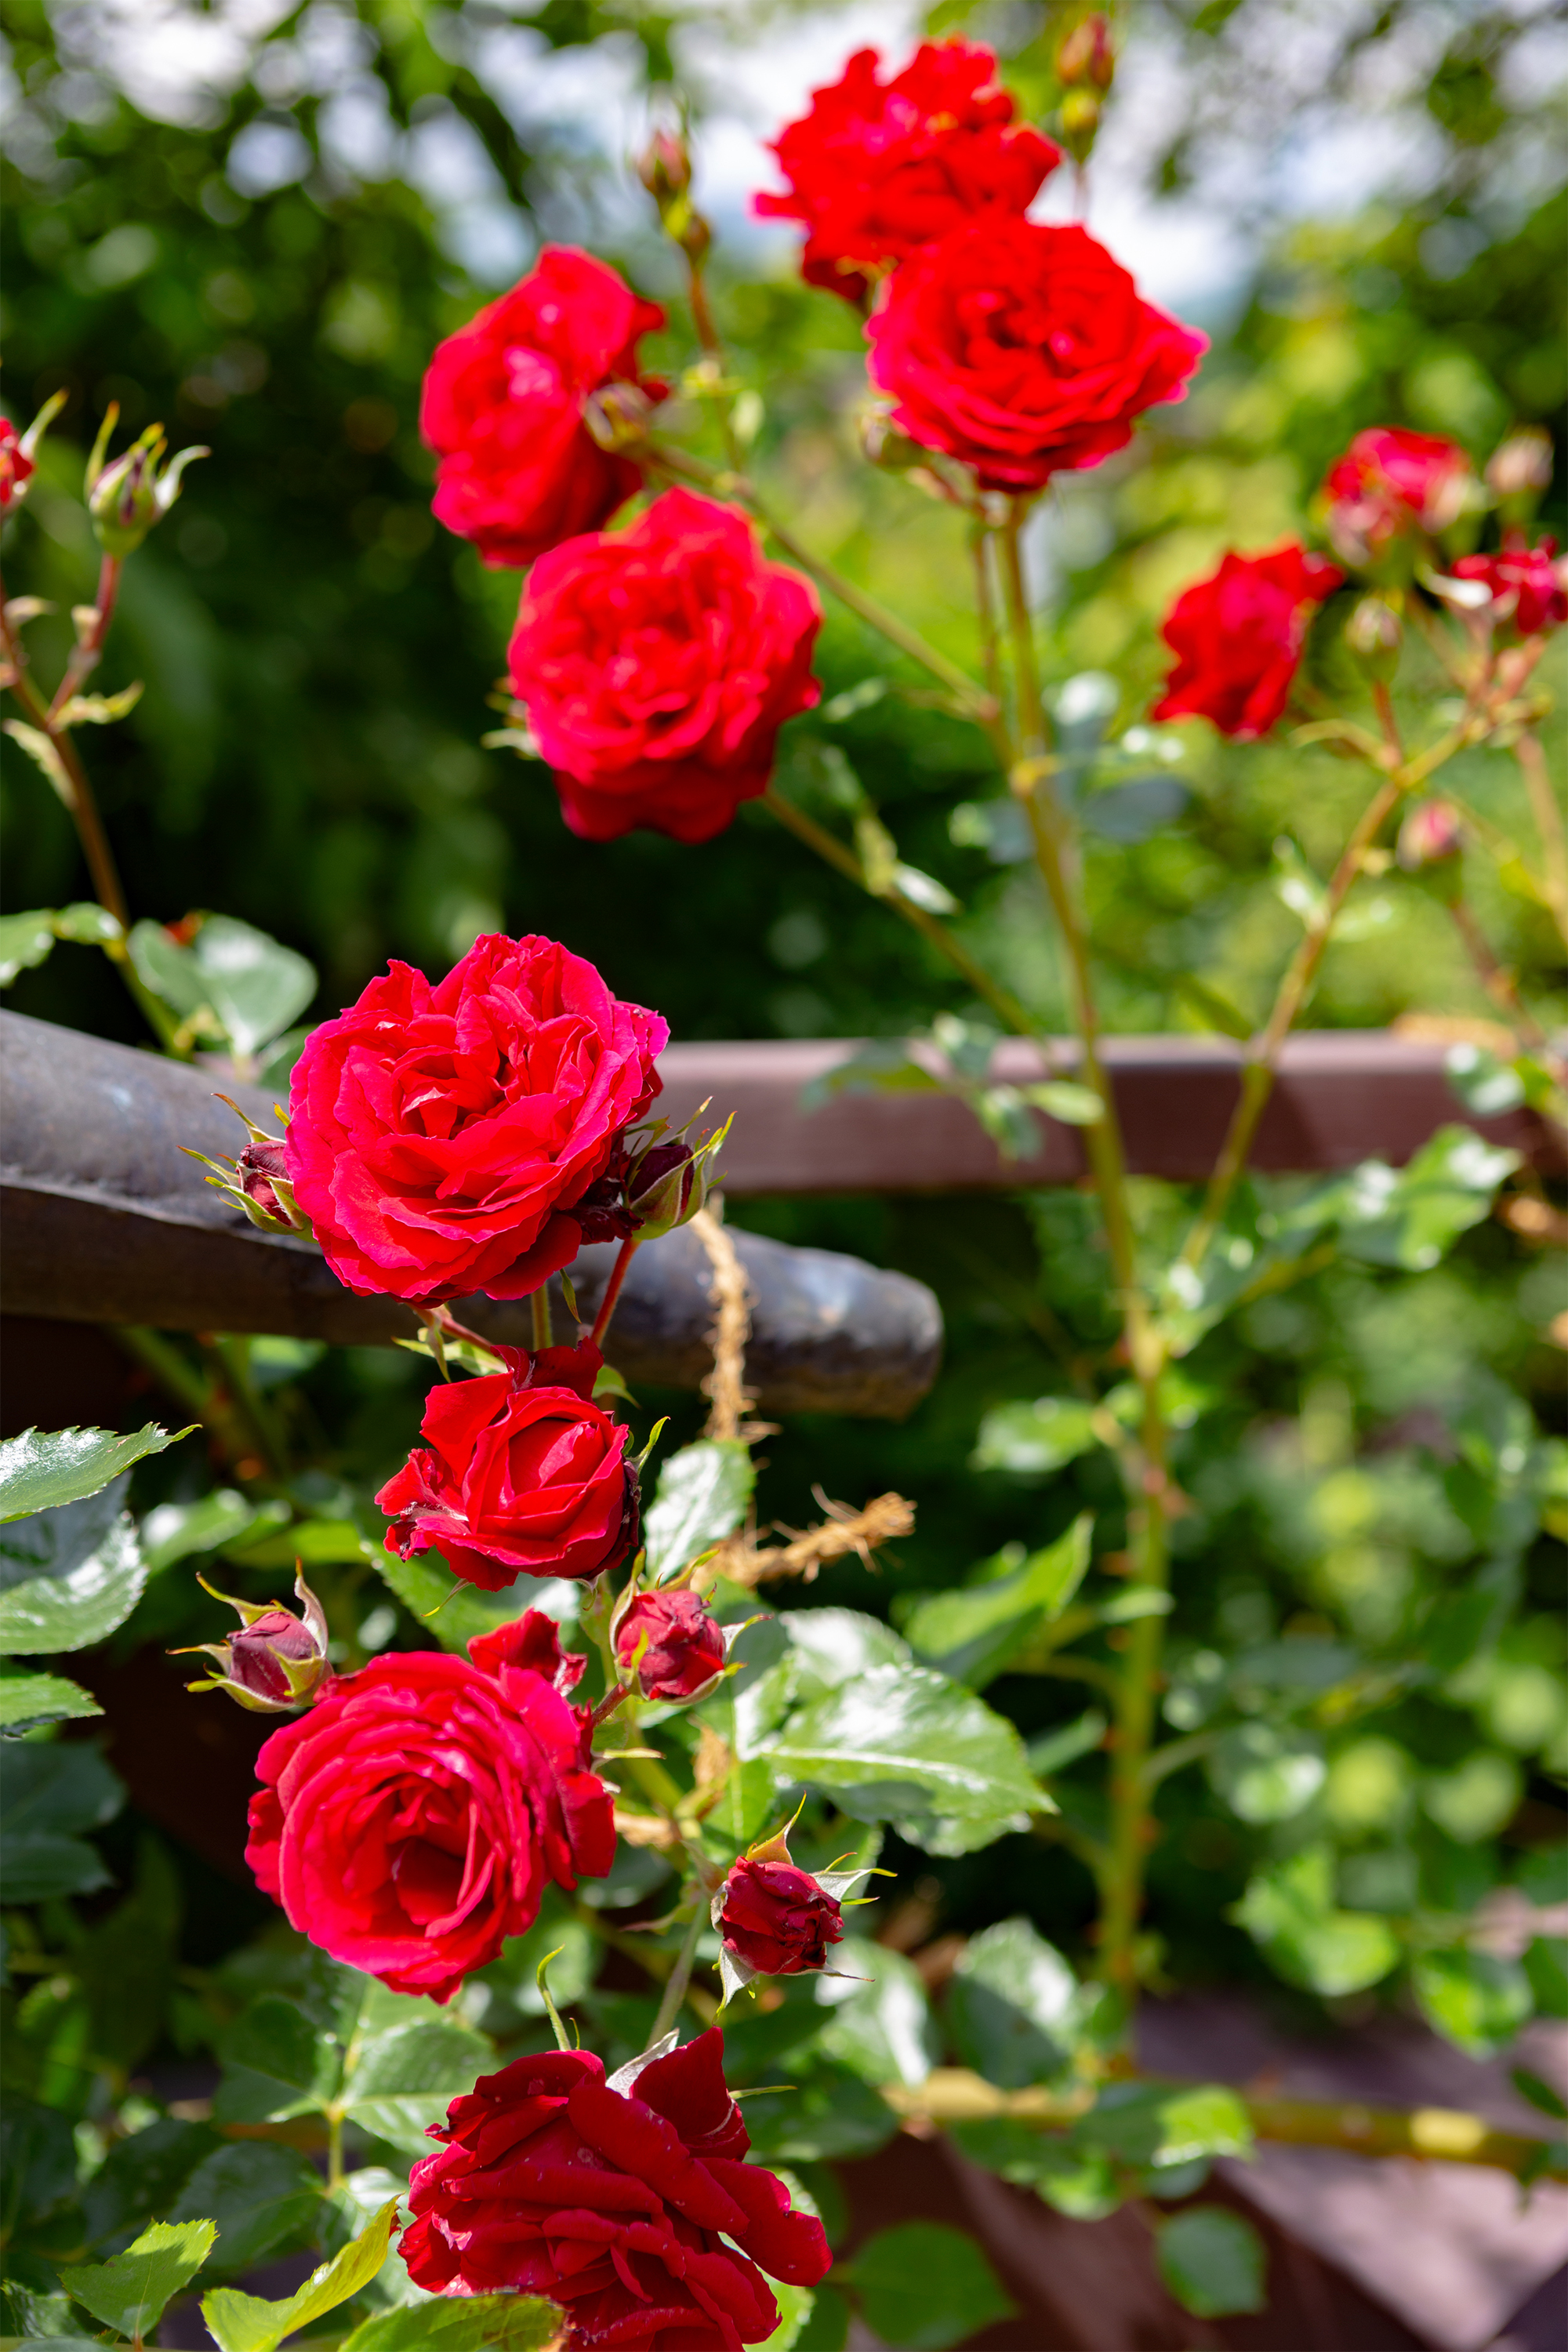 真っ赤なバラ 薔薇 02 無料の高画質フリー写真素材 イメージズラボ